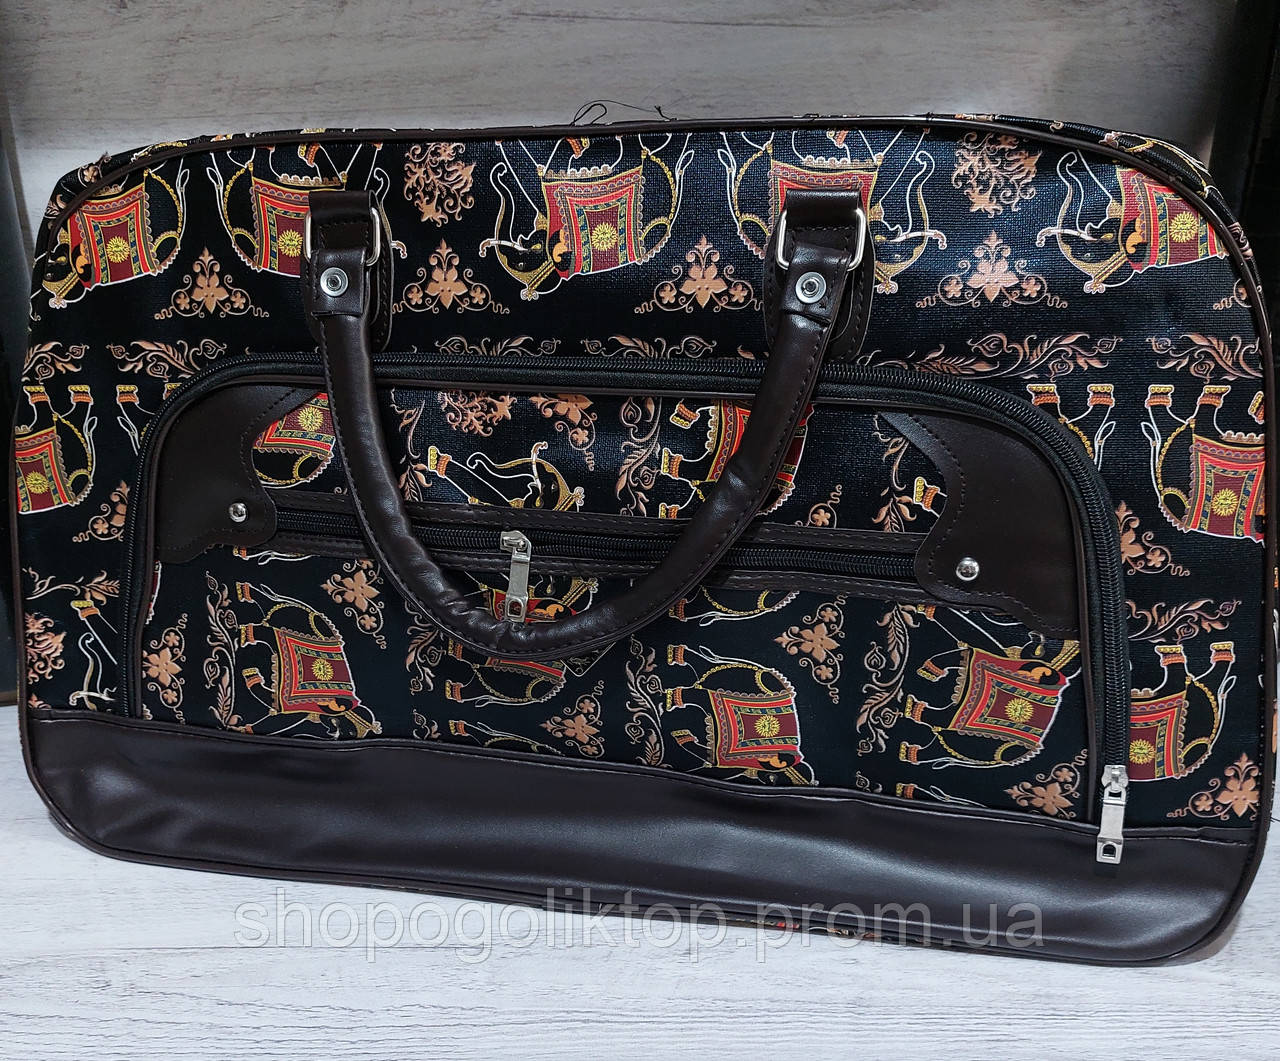 Велика сумка жіноча, дорожня, саквояж (61х38х26) Ручна поклажа для подорожей.